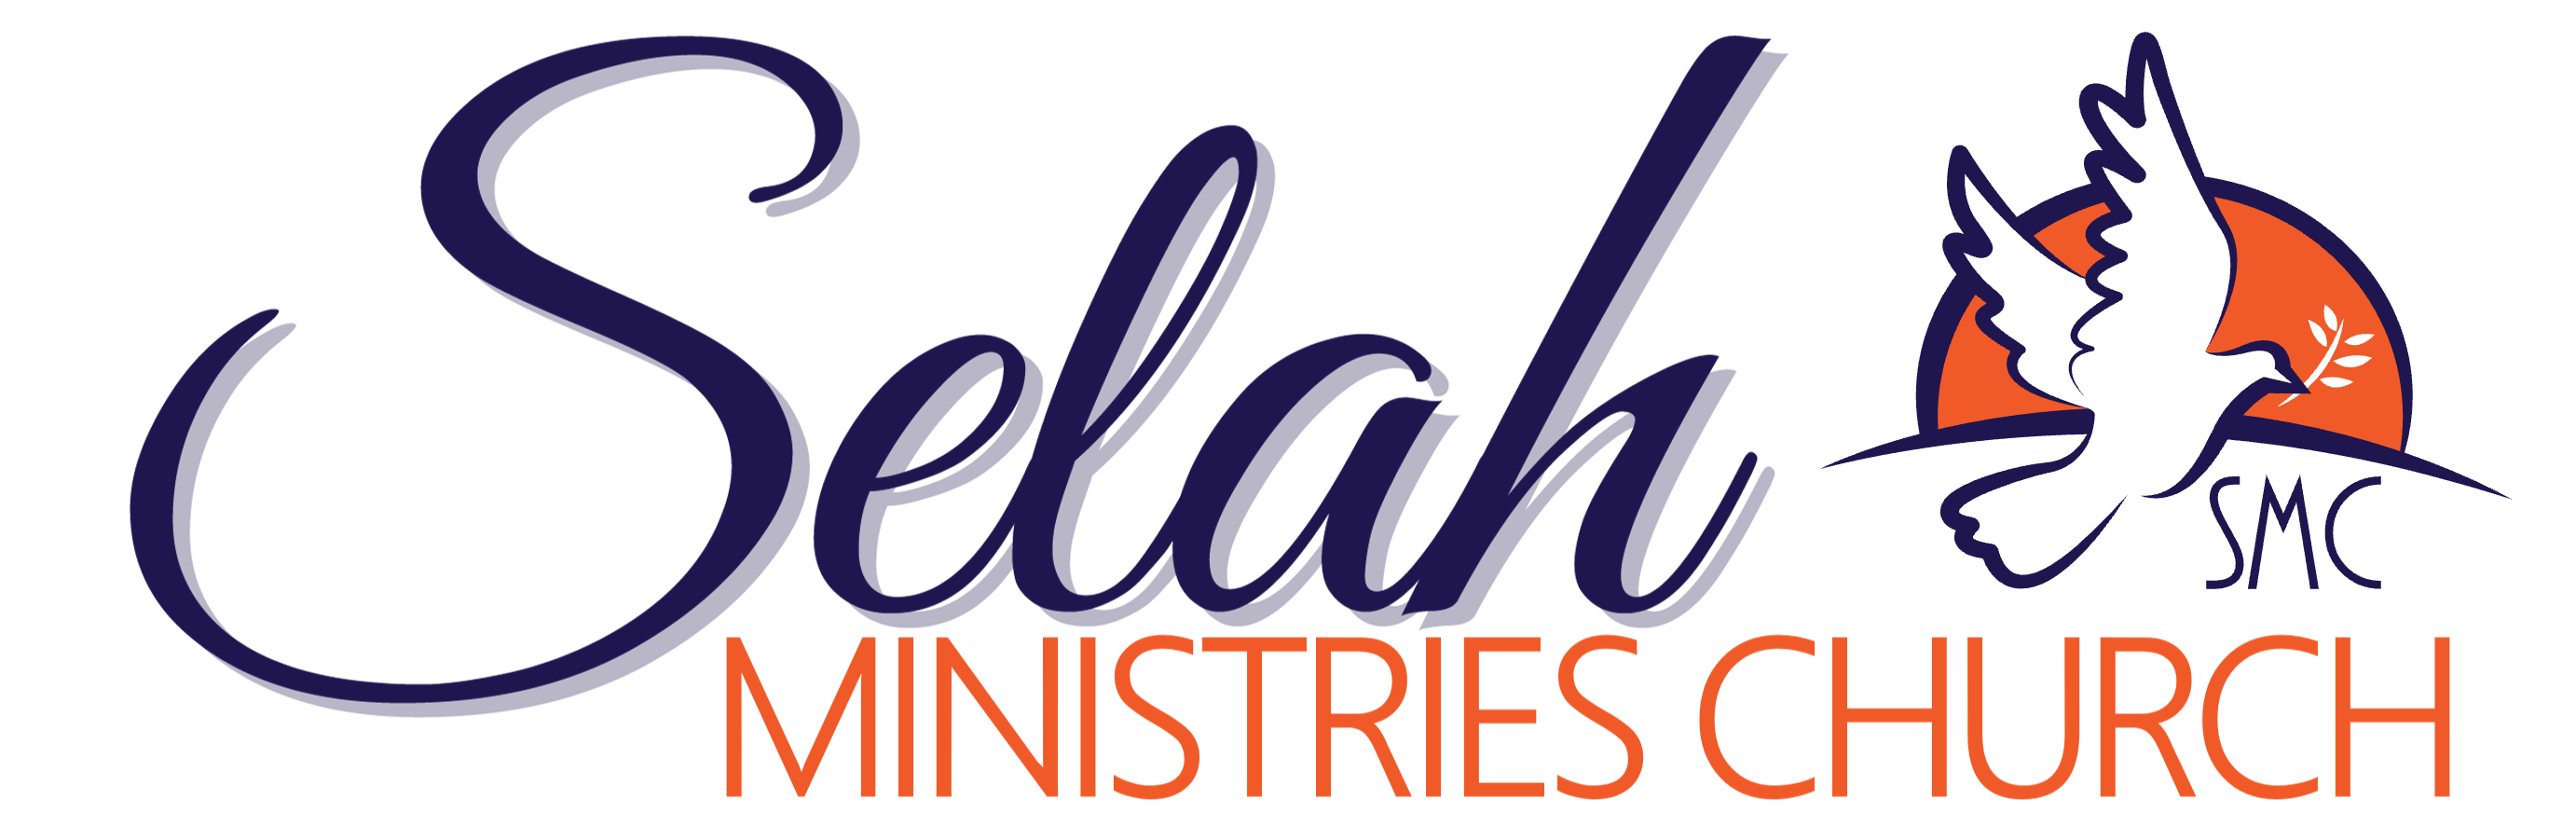 Selah Ministries Church